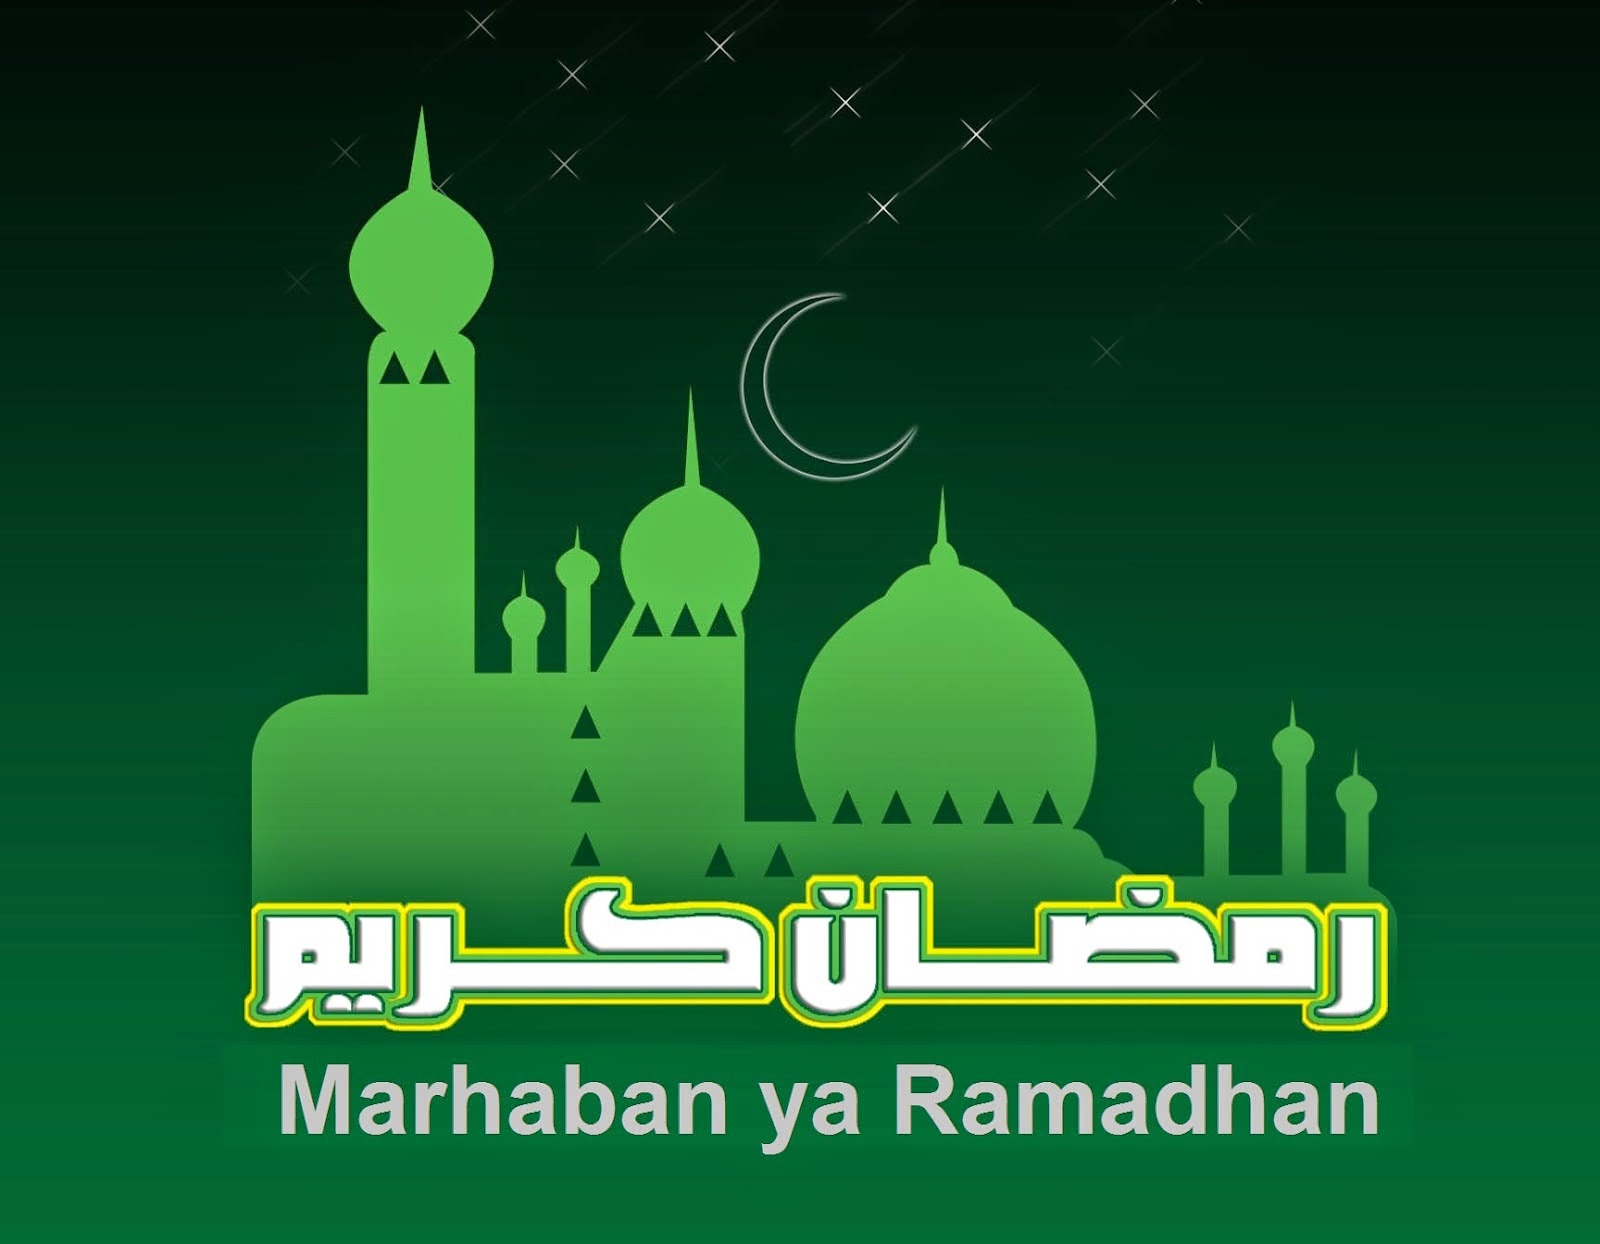 Gambar Ucapan Selamat Puasa Ramadhan 2014 M/1435 H. Part 